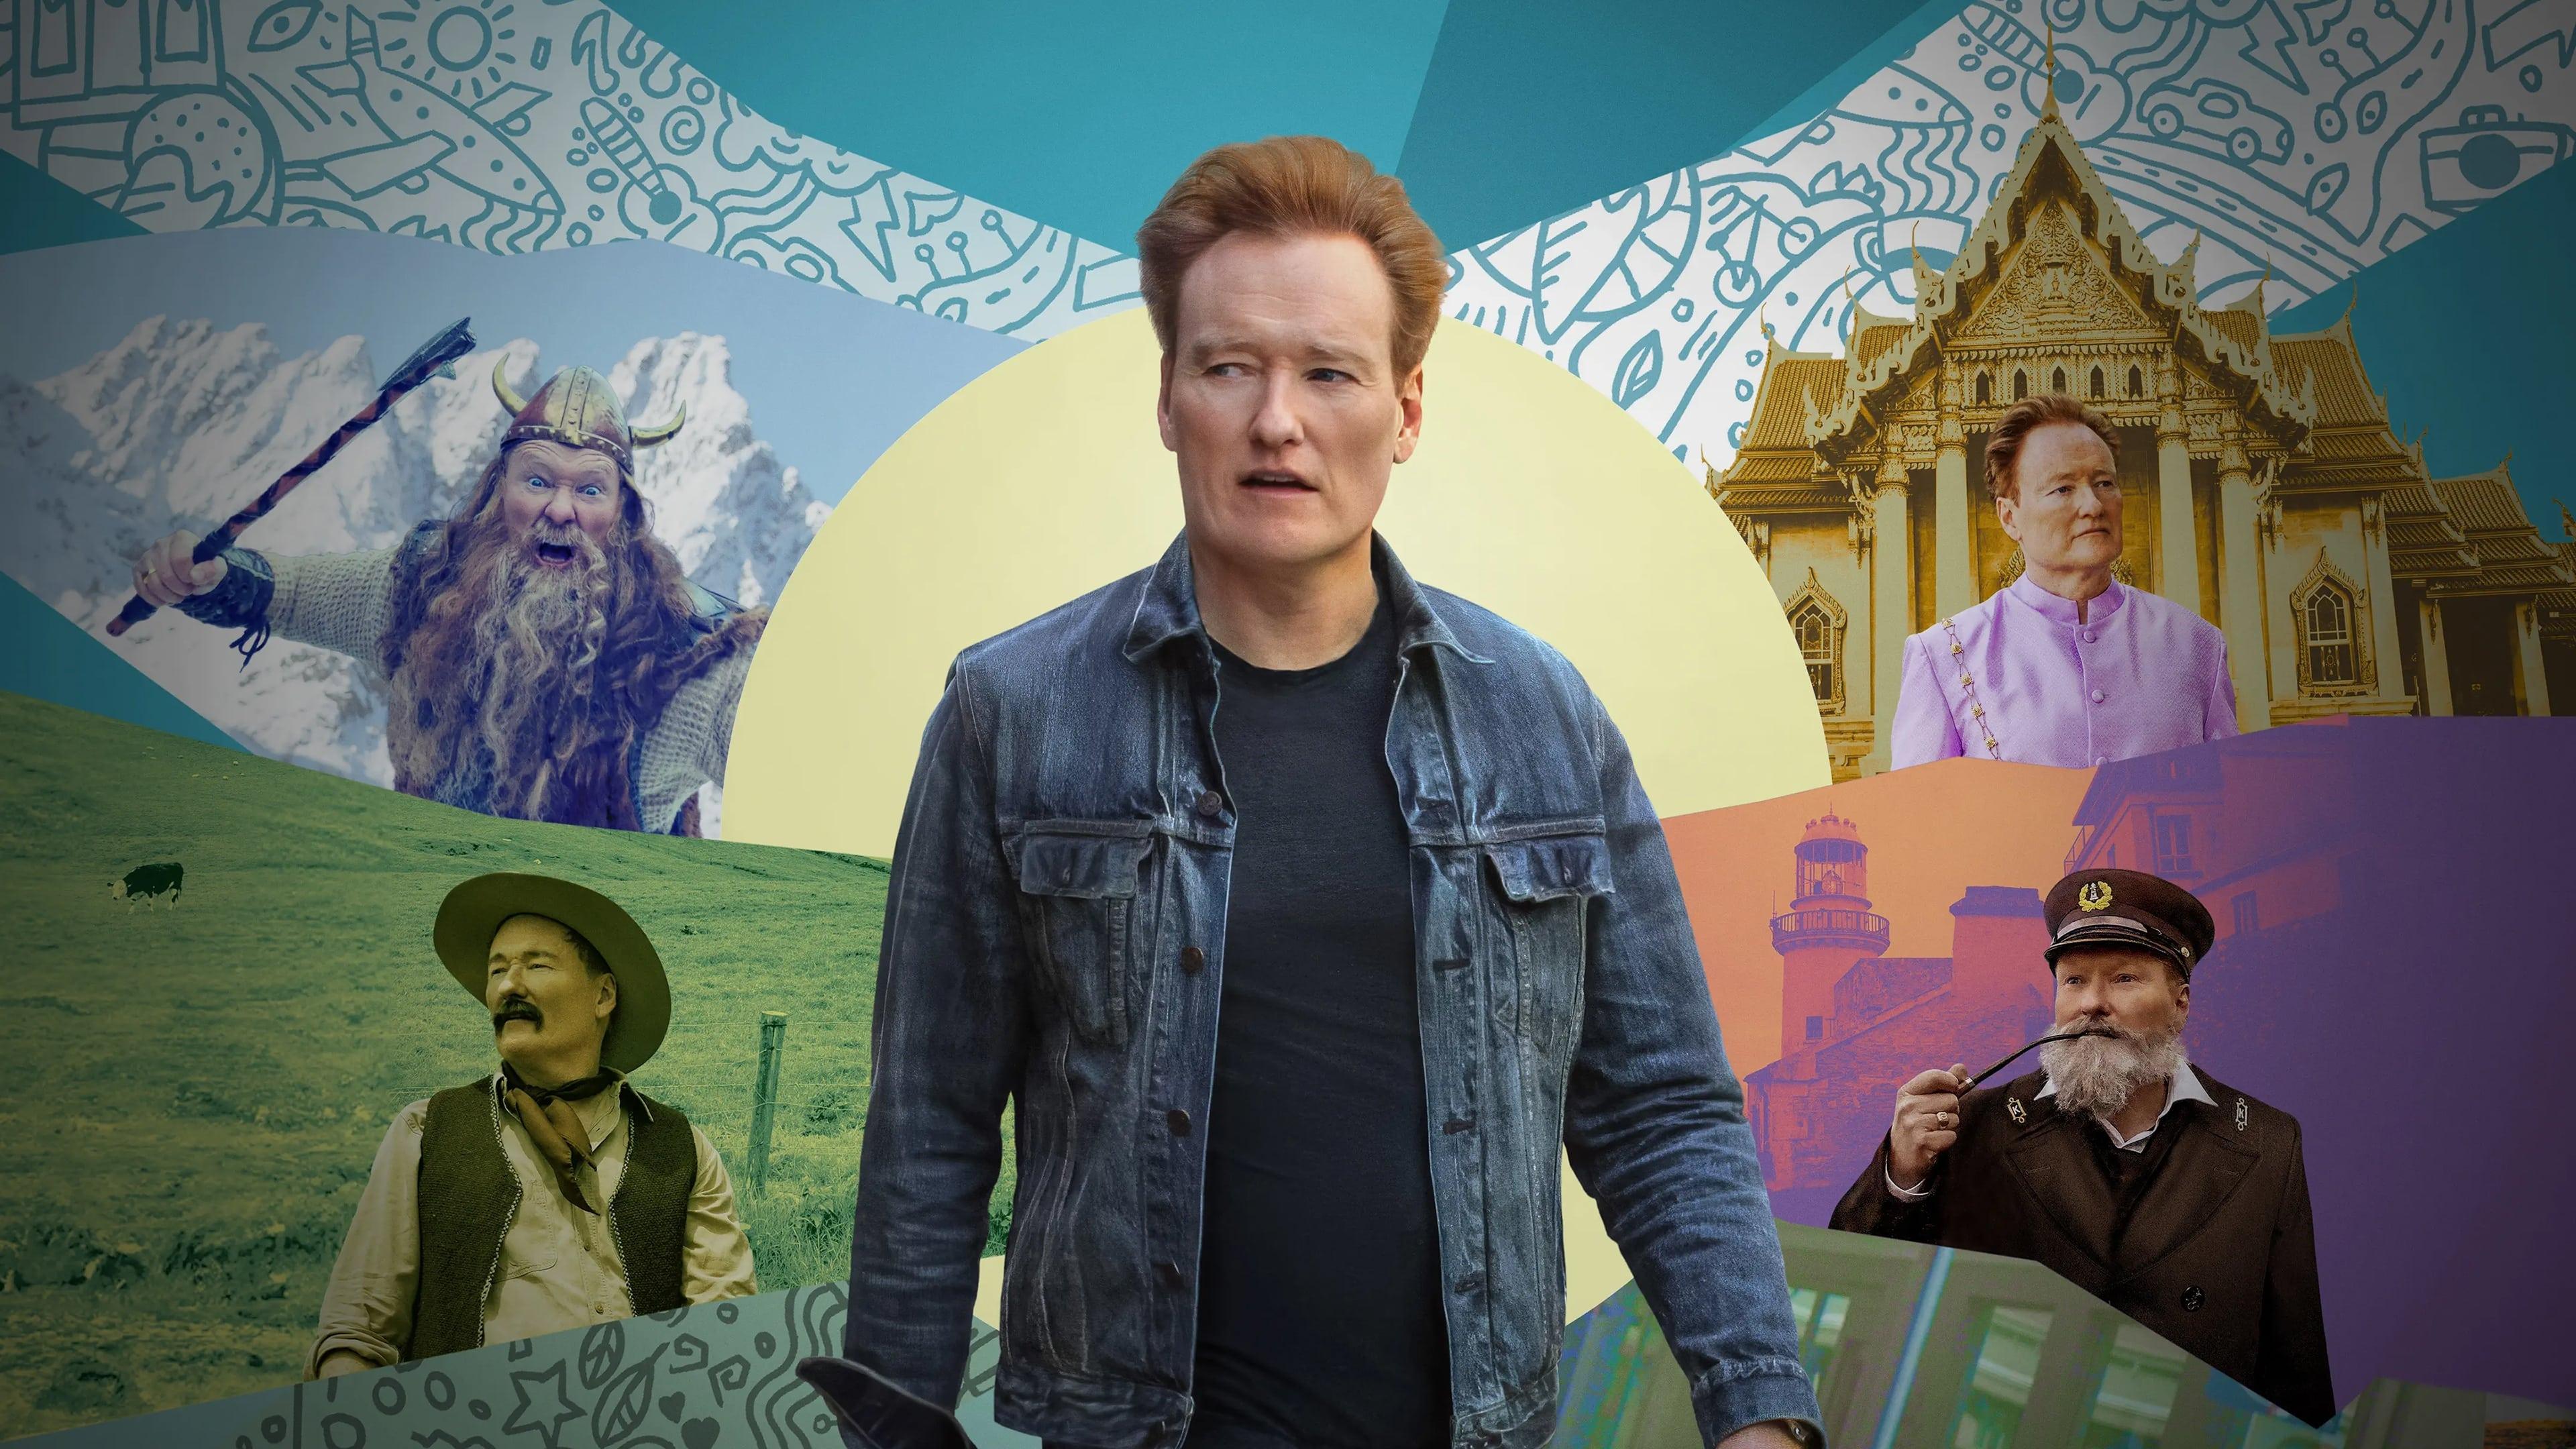 Conan O'Brien Must Go backdrop